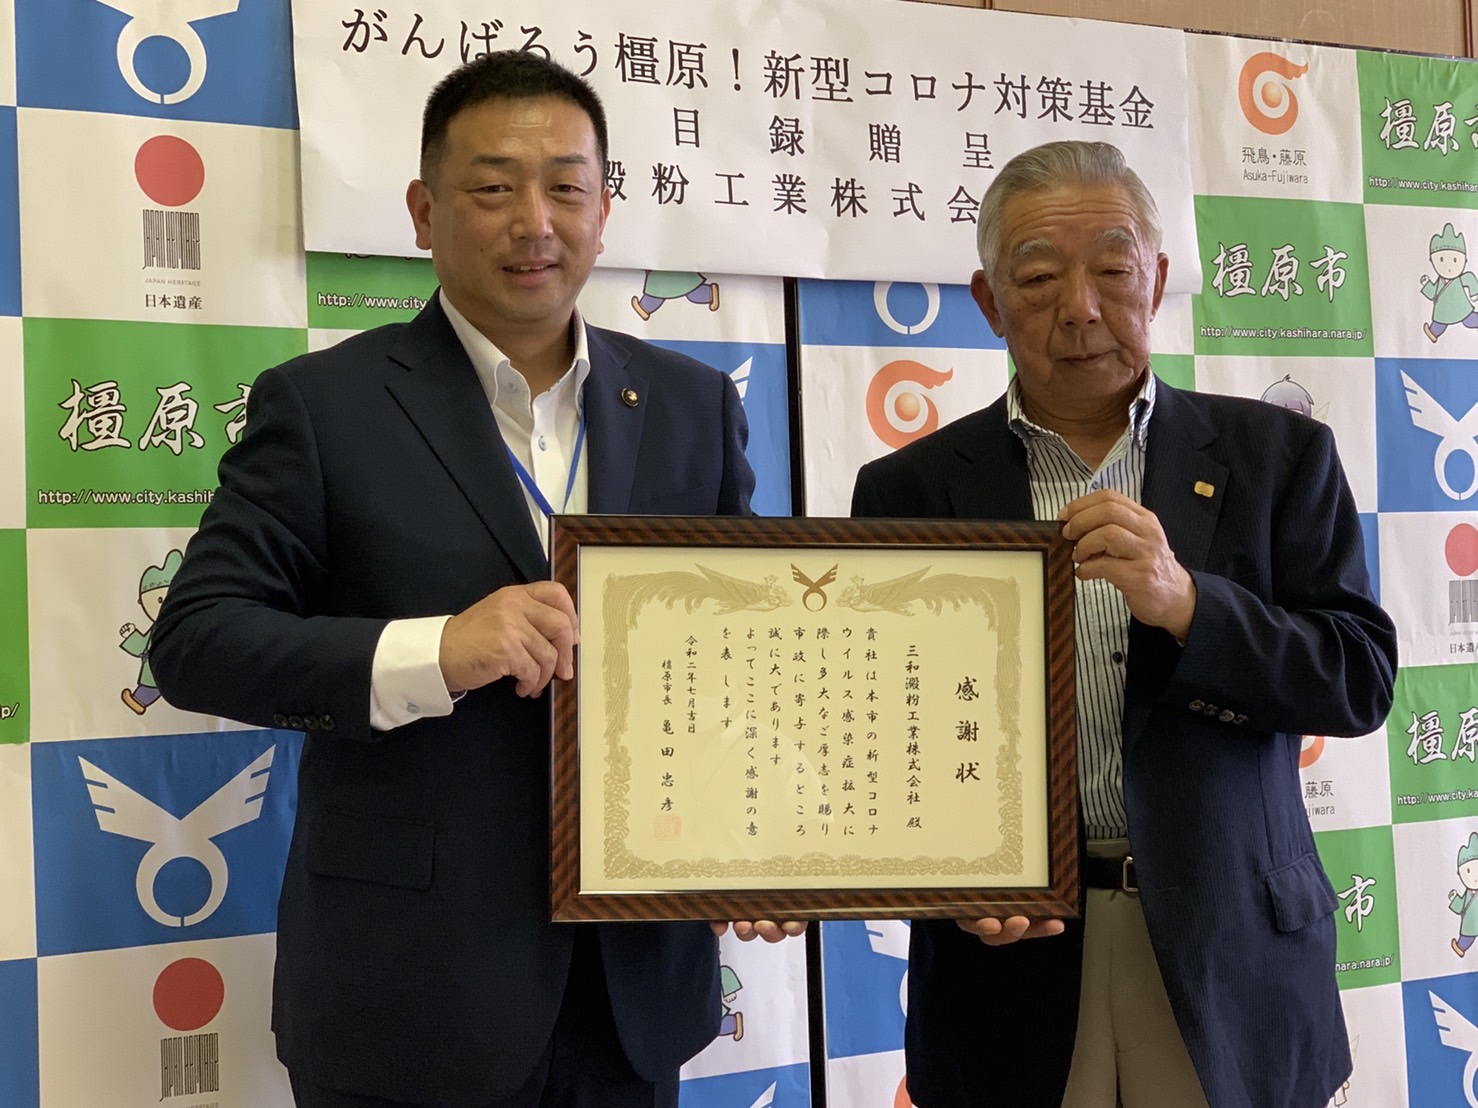 亀田市長と森本会長が賞状を手に持っている写真